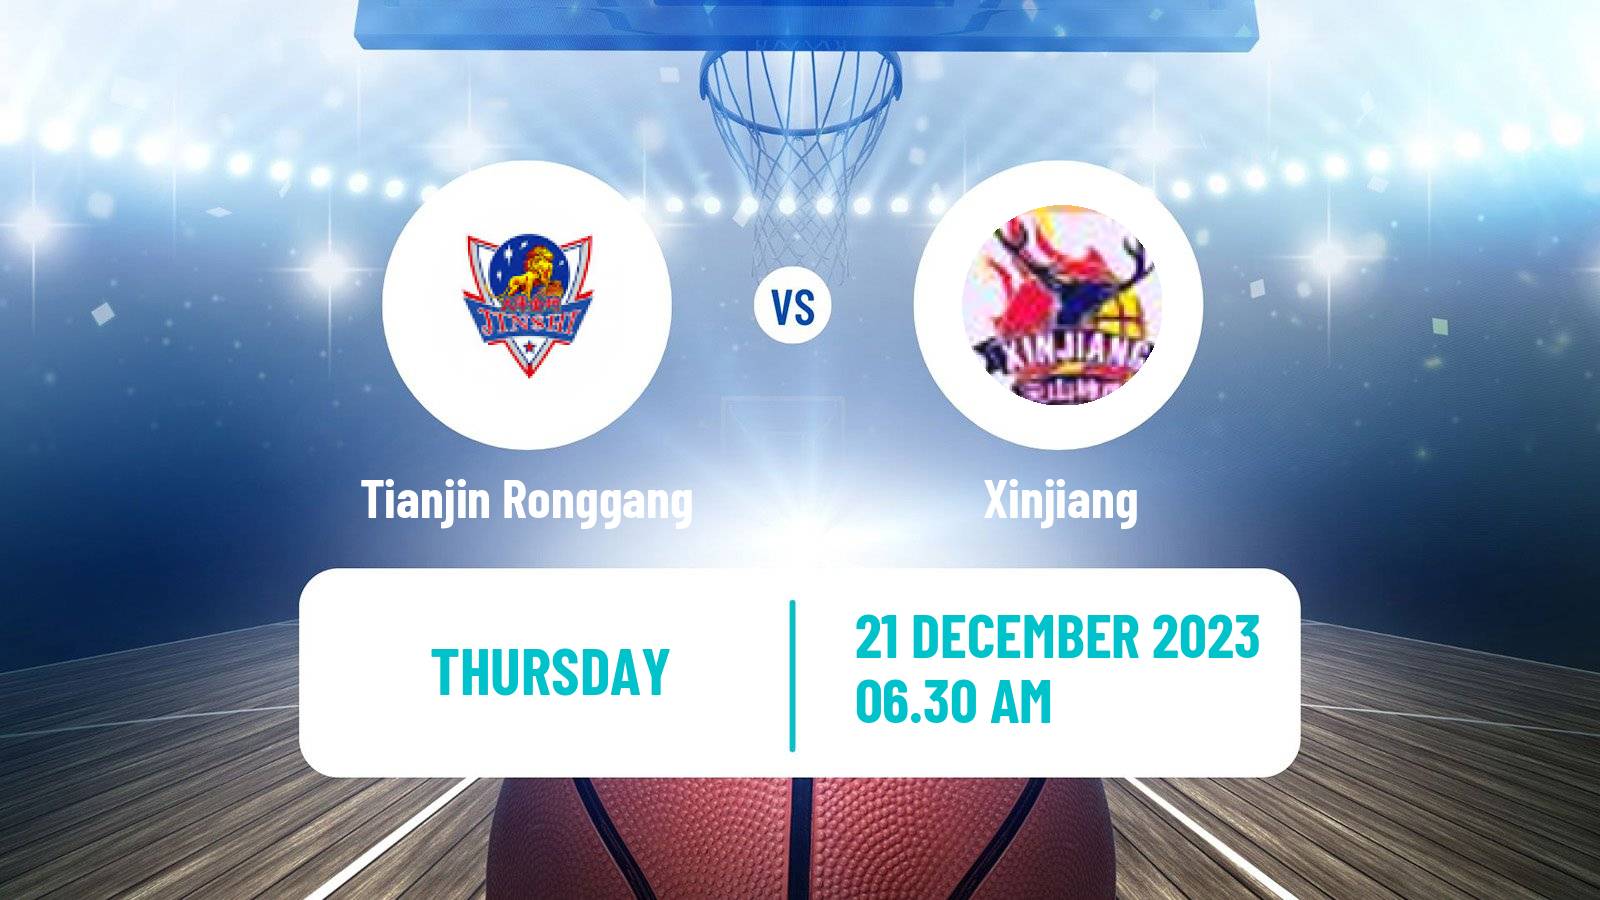 Basketball WCBA Tianjin Ronggang - Xinjiang